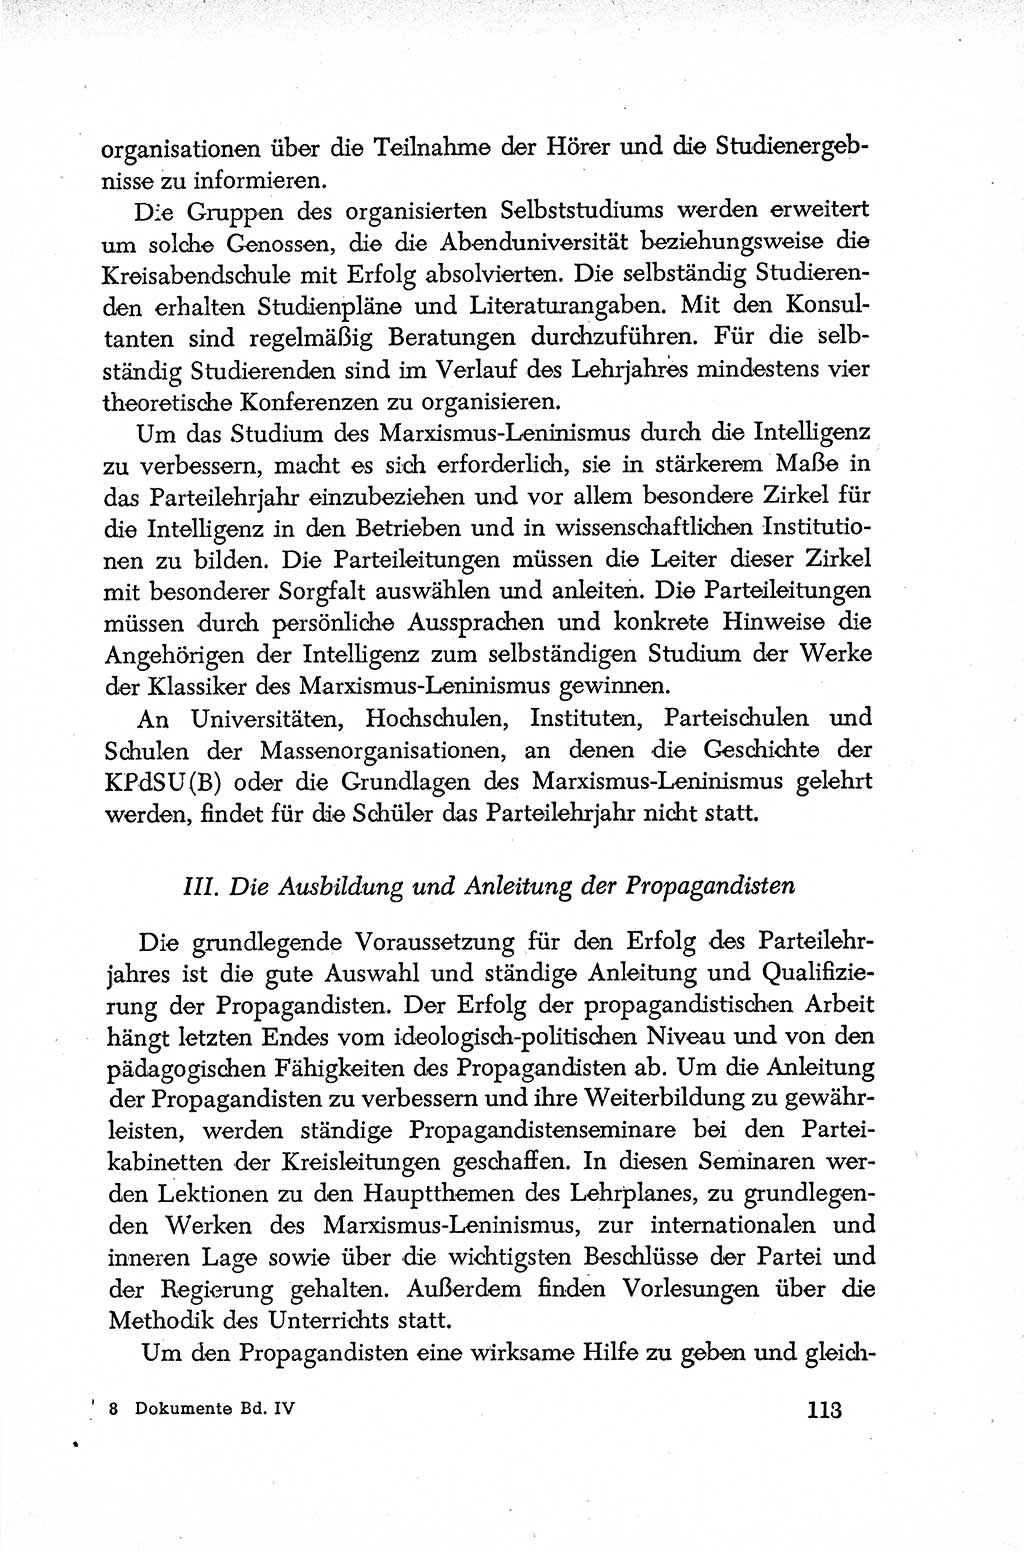 Dokumente der Sozialistischen Einheitspartei Deutschlands (SED) [Deutsche Demokratische Republik (DDR)] 1952-1953, Seite 113 (Dok. SED DDR 1952-1953, S. 113)